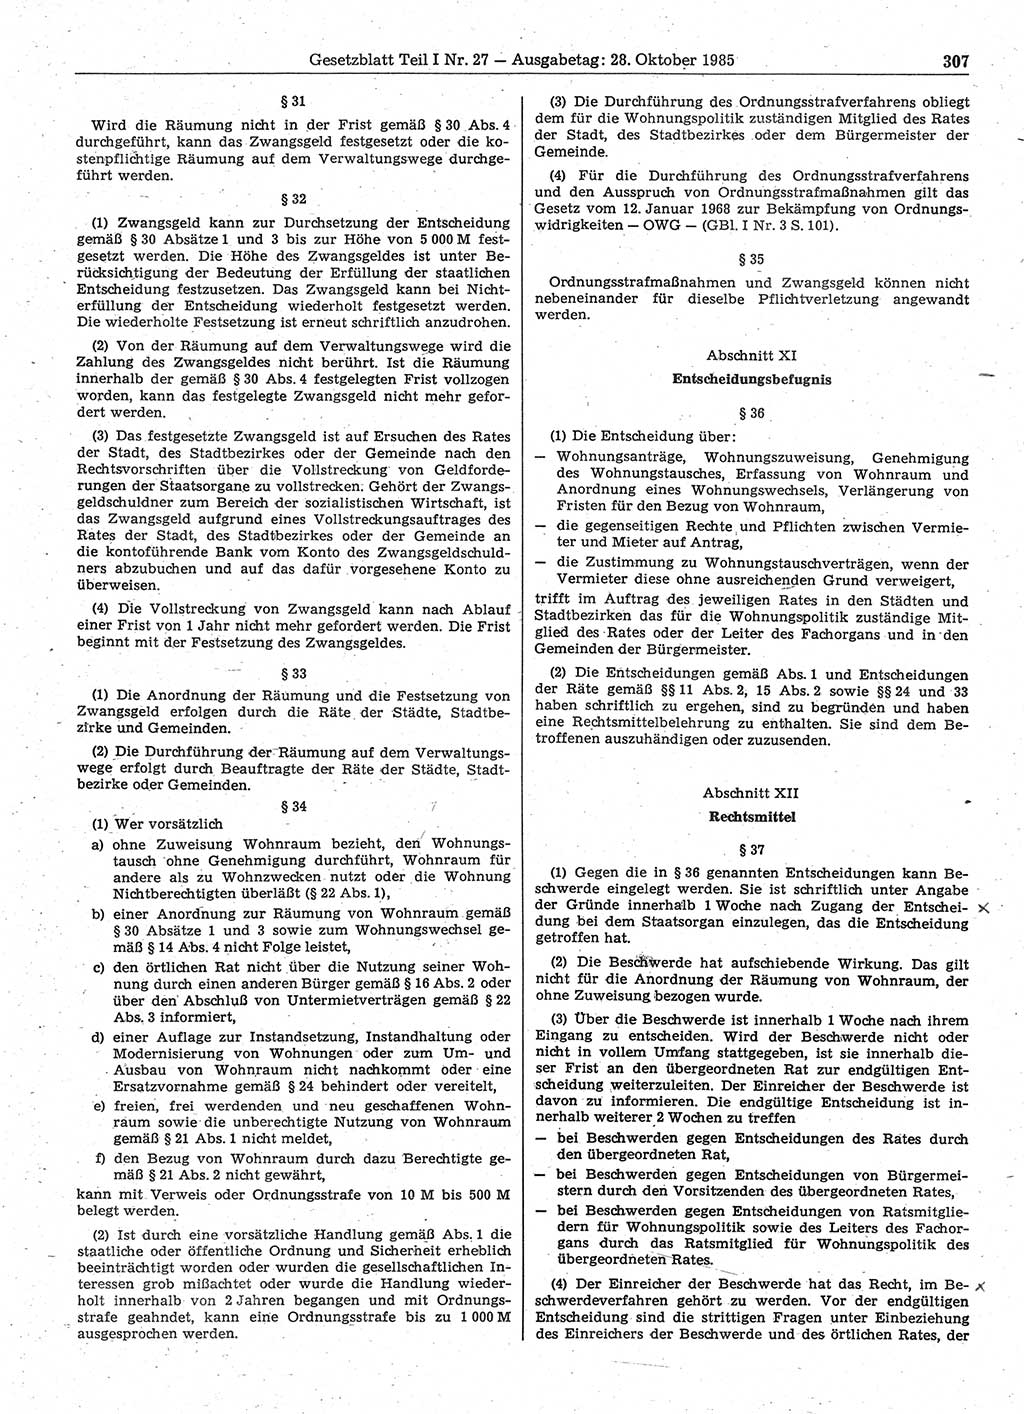 Gesetzblatt (GBl.) der Deutschen Demokratischen Republik (DDR) Teil Ⅰ 1985, Seite 307 (GBl. DDR Ⅰ 1985, S. 307)